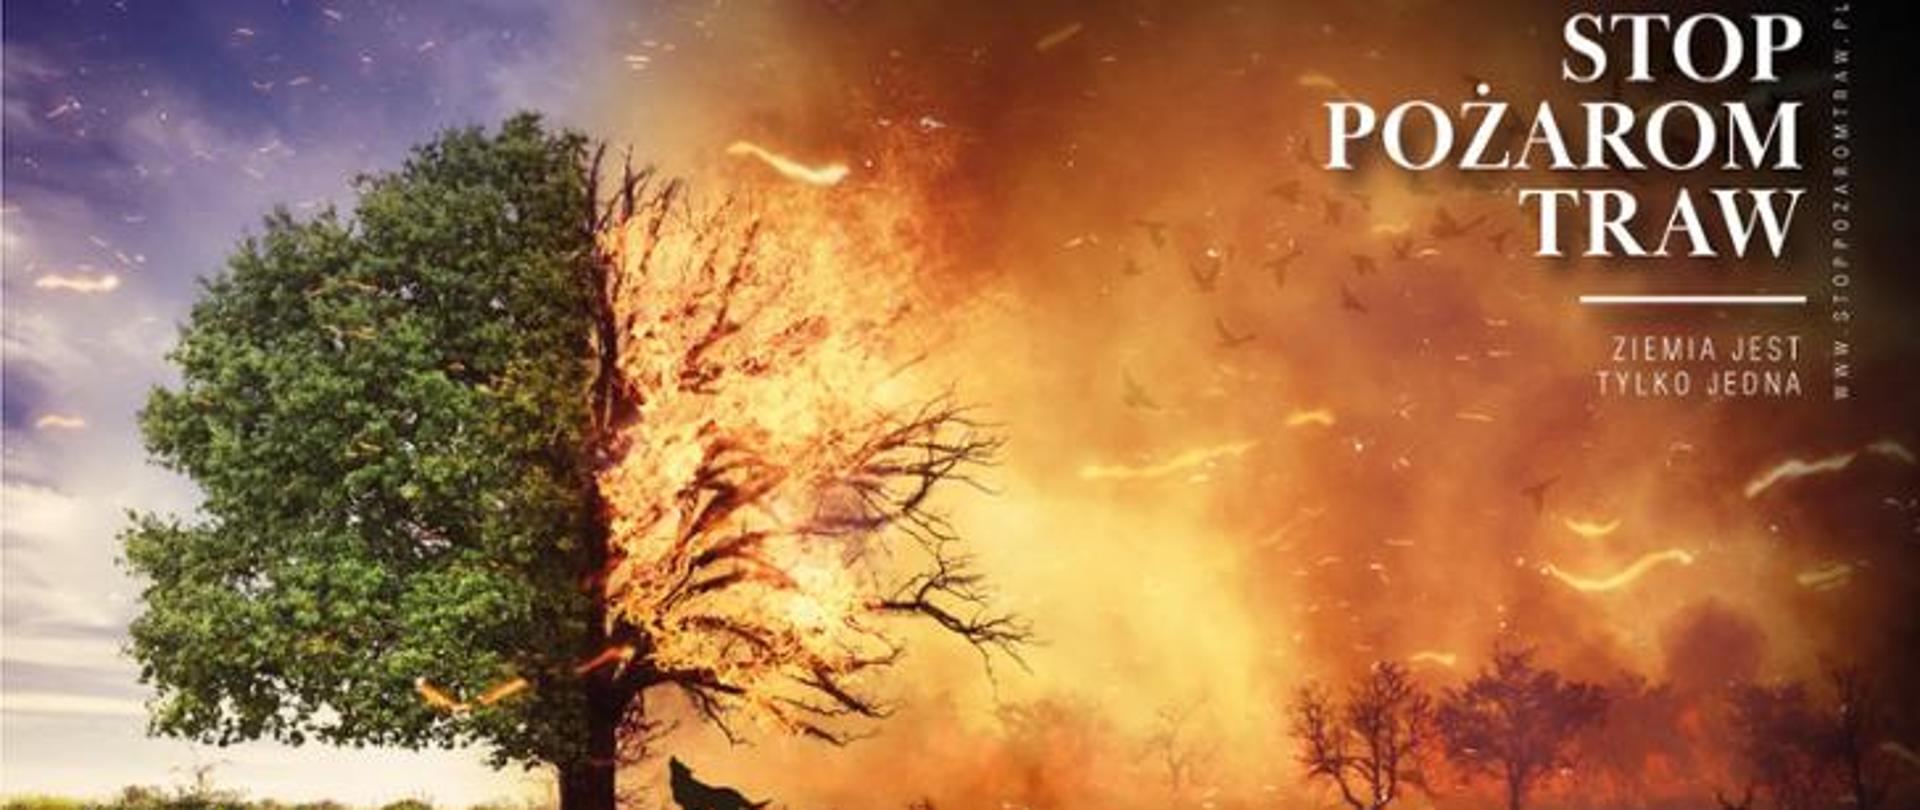 Plakat kampanii Stop Pożarom Traw z grafiką palącego się drzewa.